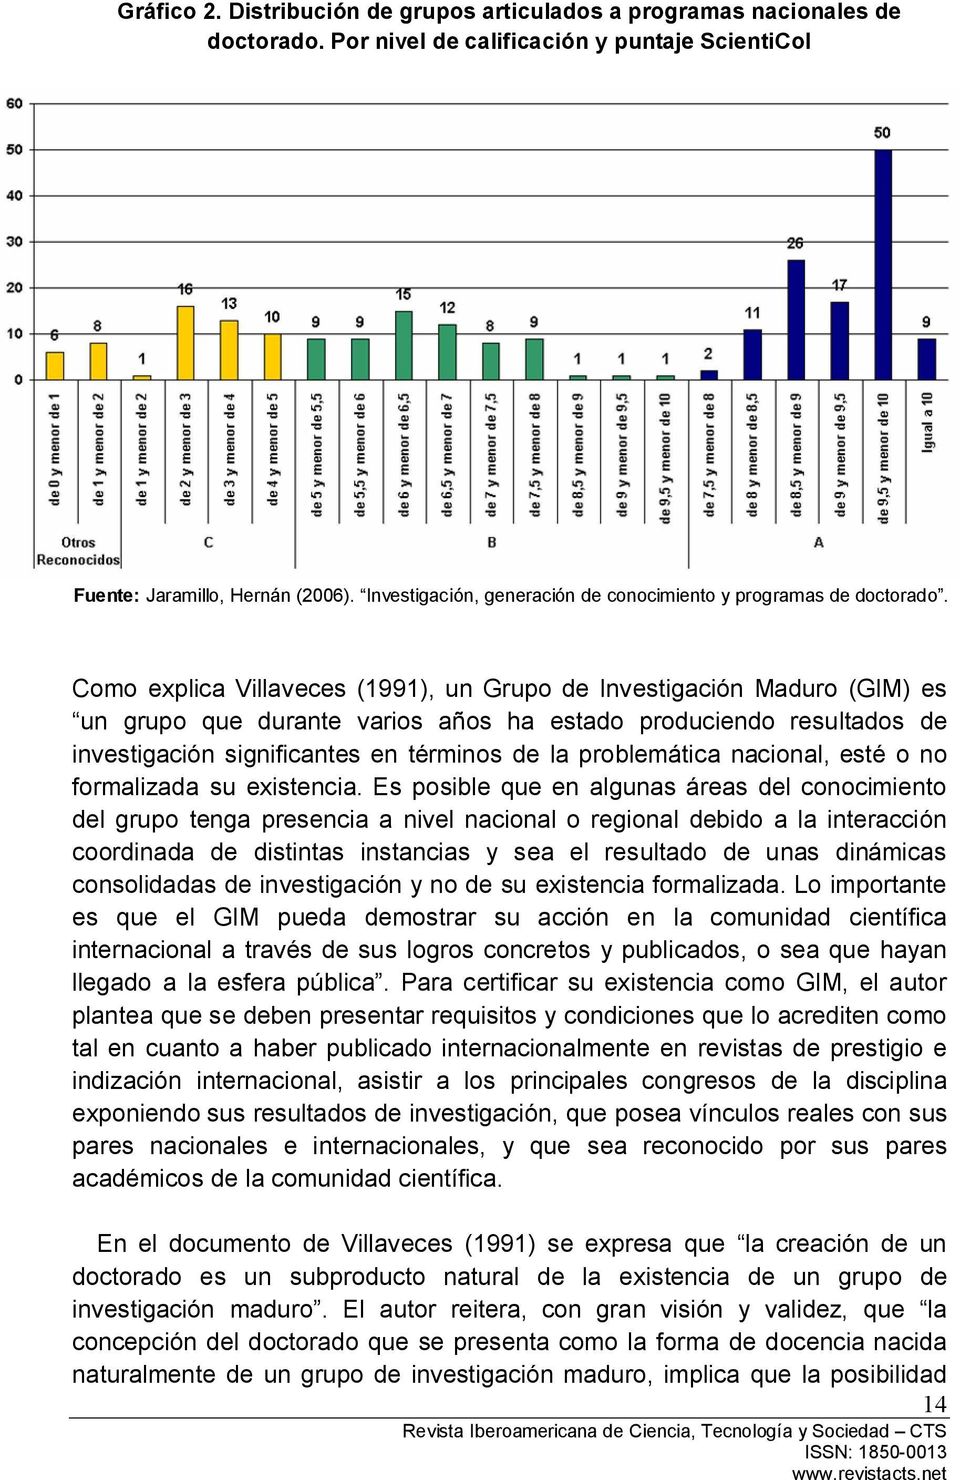 Como explica Villaveces (1991), un Grupo de Investigación Maduro (GIM) es un grupo que durante varios años ha estado produciendo resultados de investigación significantes en términos de la